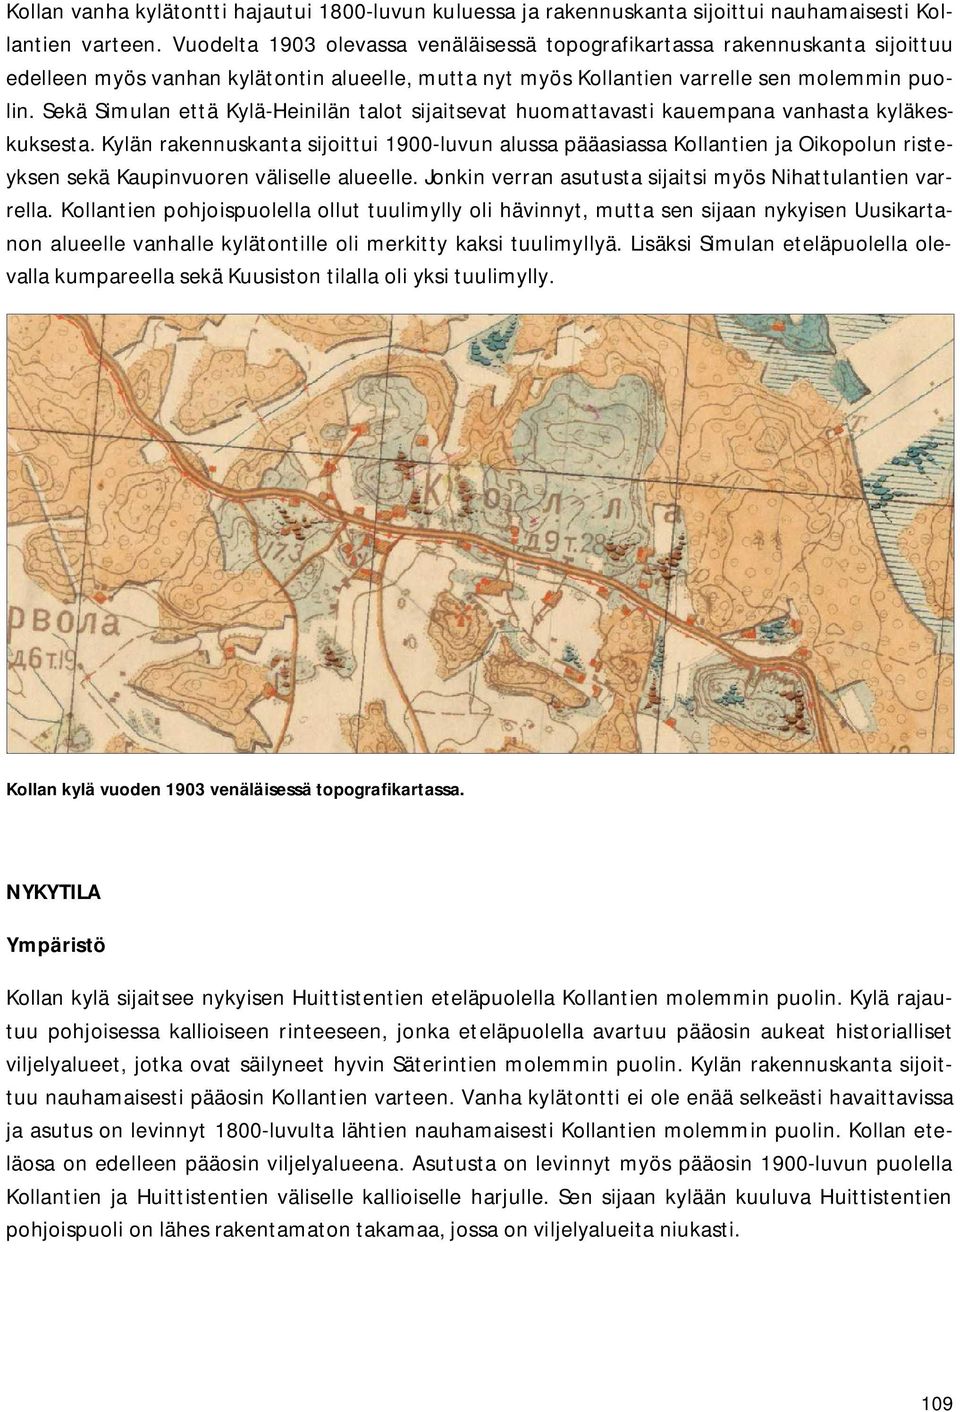 Sekä Simulan että Kylä-Heinilän talot sijaitsevat huomattavasti kauempana vanhasta kyläkeskuksesta.